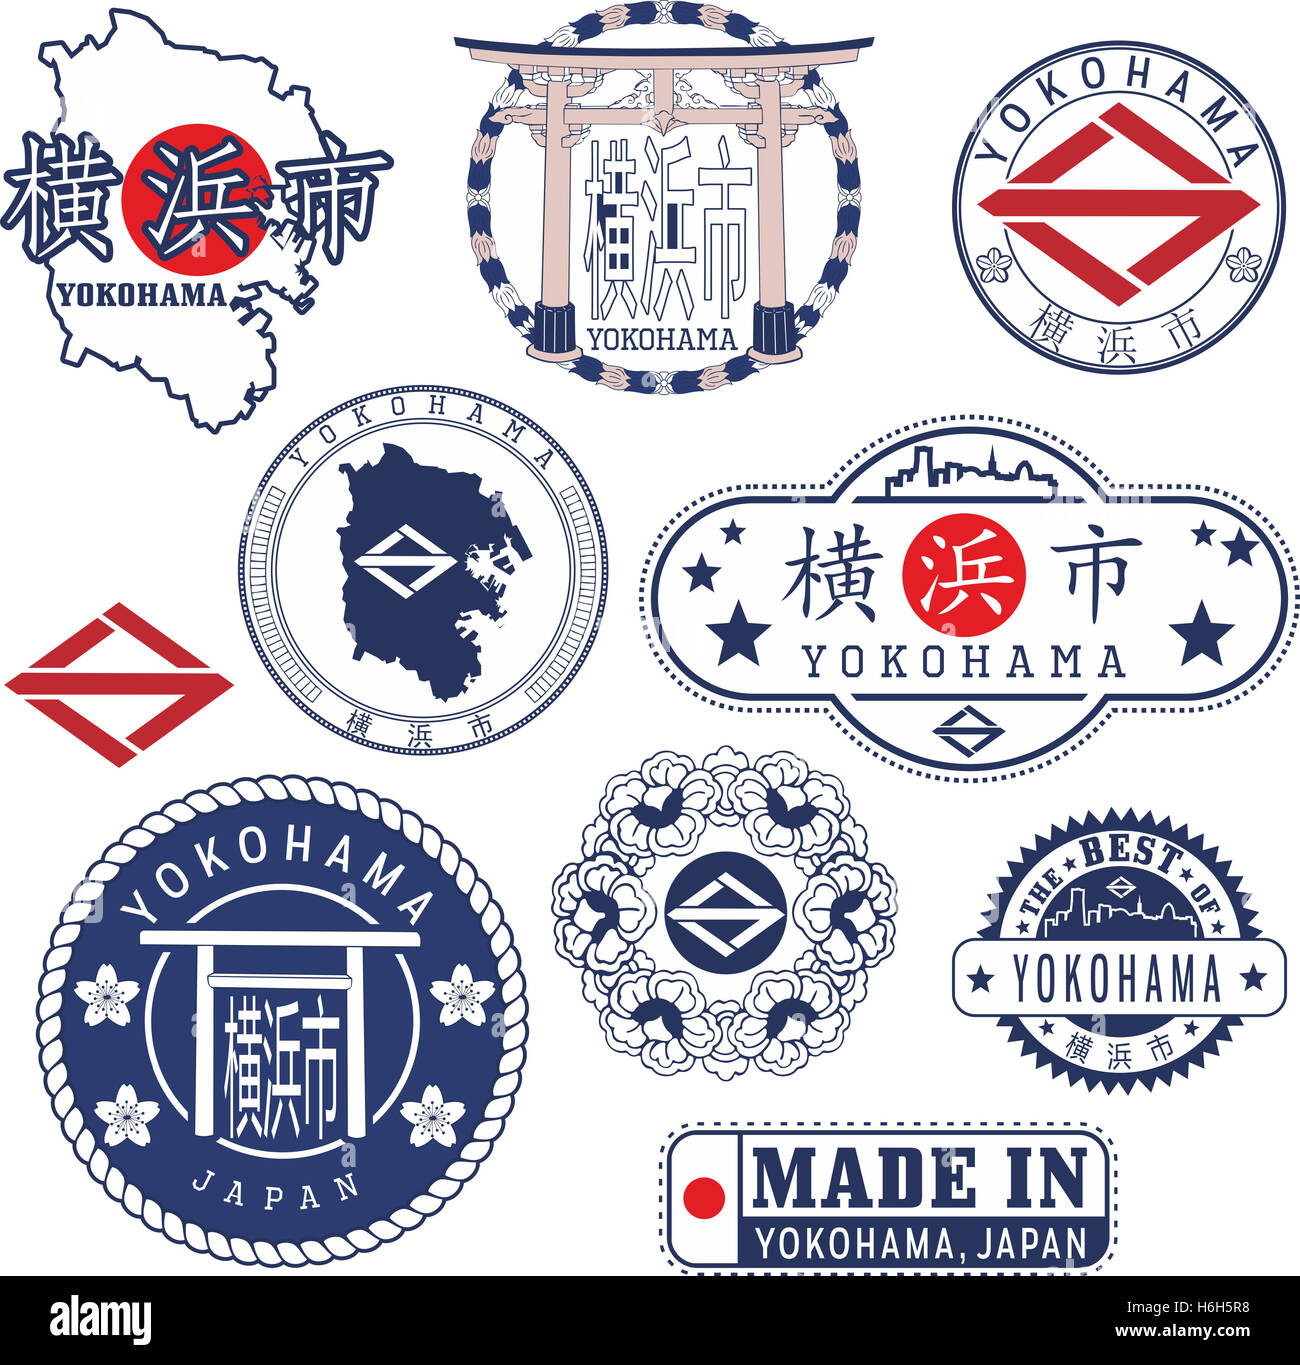 Stadt von Yokohama, Japan. Reihe von generischen Marken und Zeichen inklusive Stadtplan, Emblem Elemente und japanischen Hieroglyphe Yokohama na Stockfoto